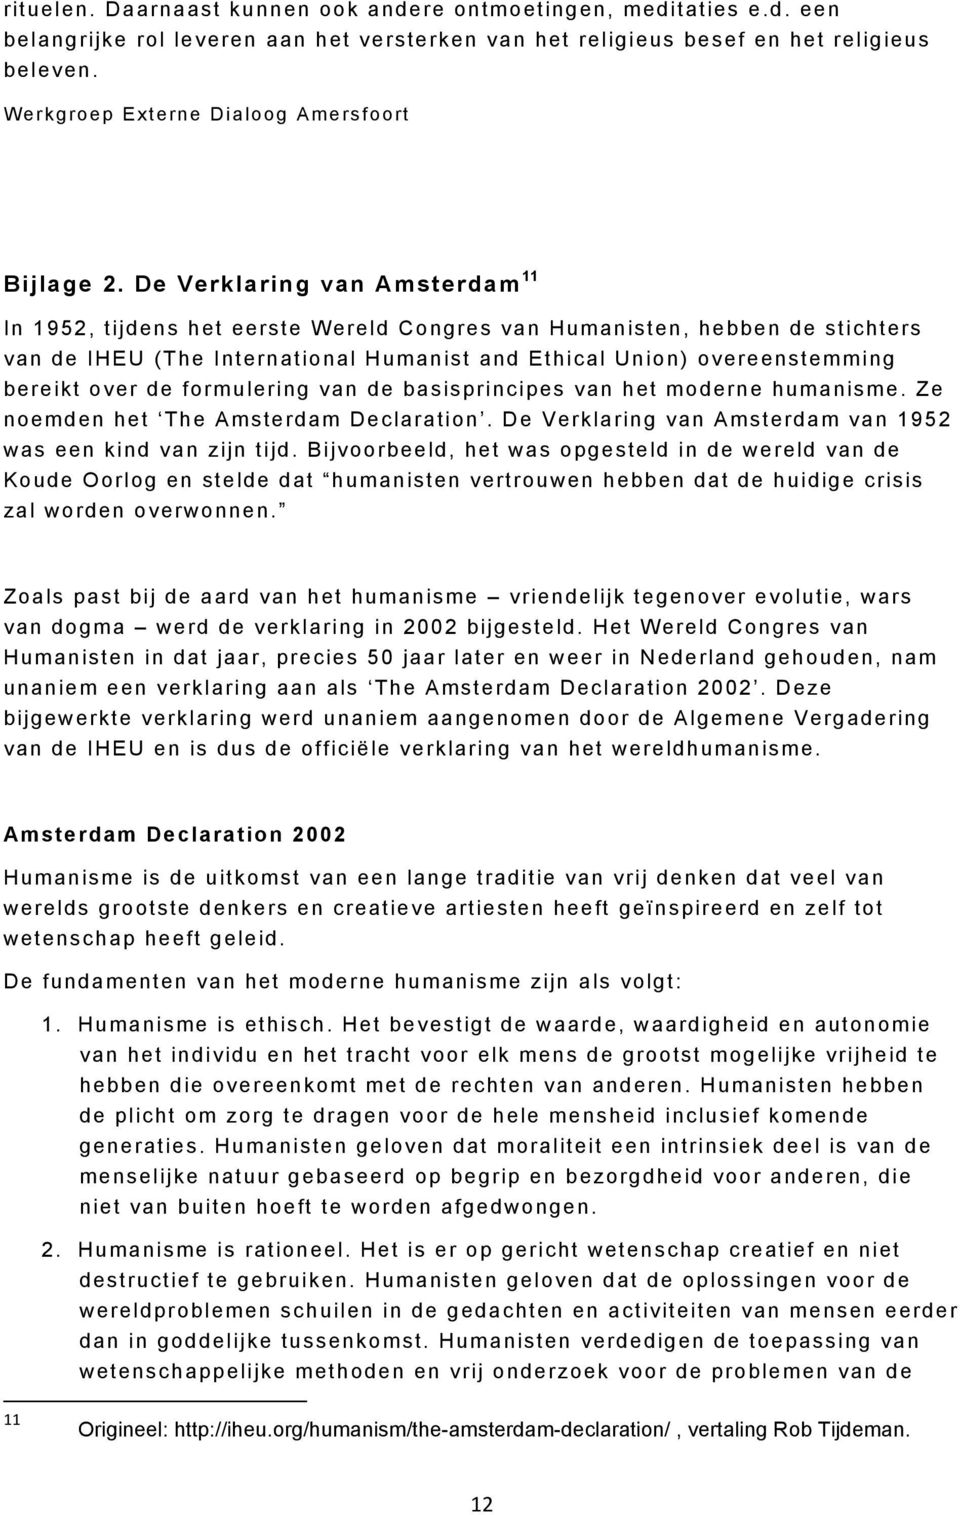 De Verklaring van Amsterdam 11 In 1952, tijdens het eerste Wereld Congres van Humanisten, hebben de stichters van de IHEU (The International Humanist and Ethical Union) overeenstemming bereikt over